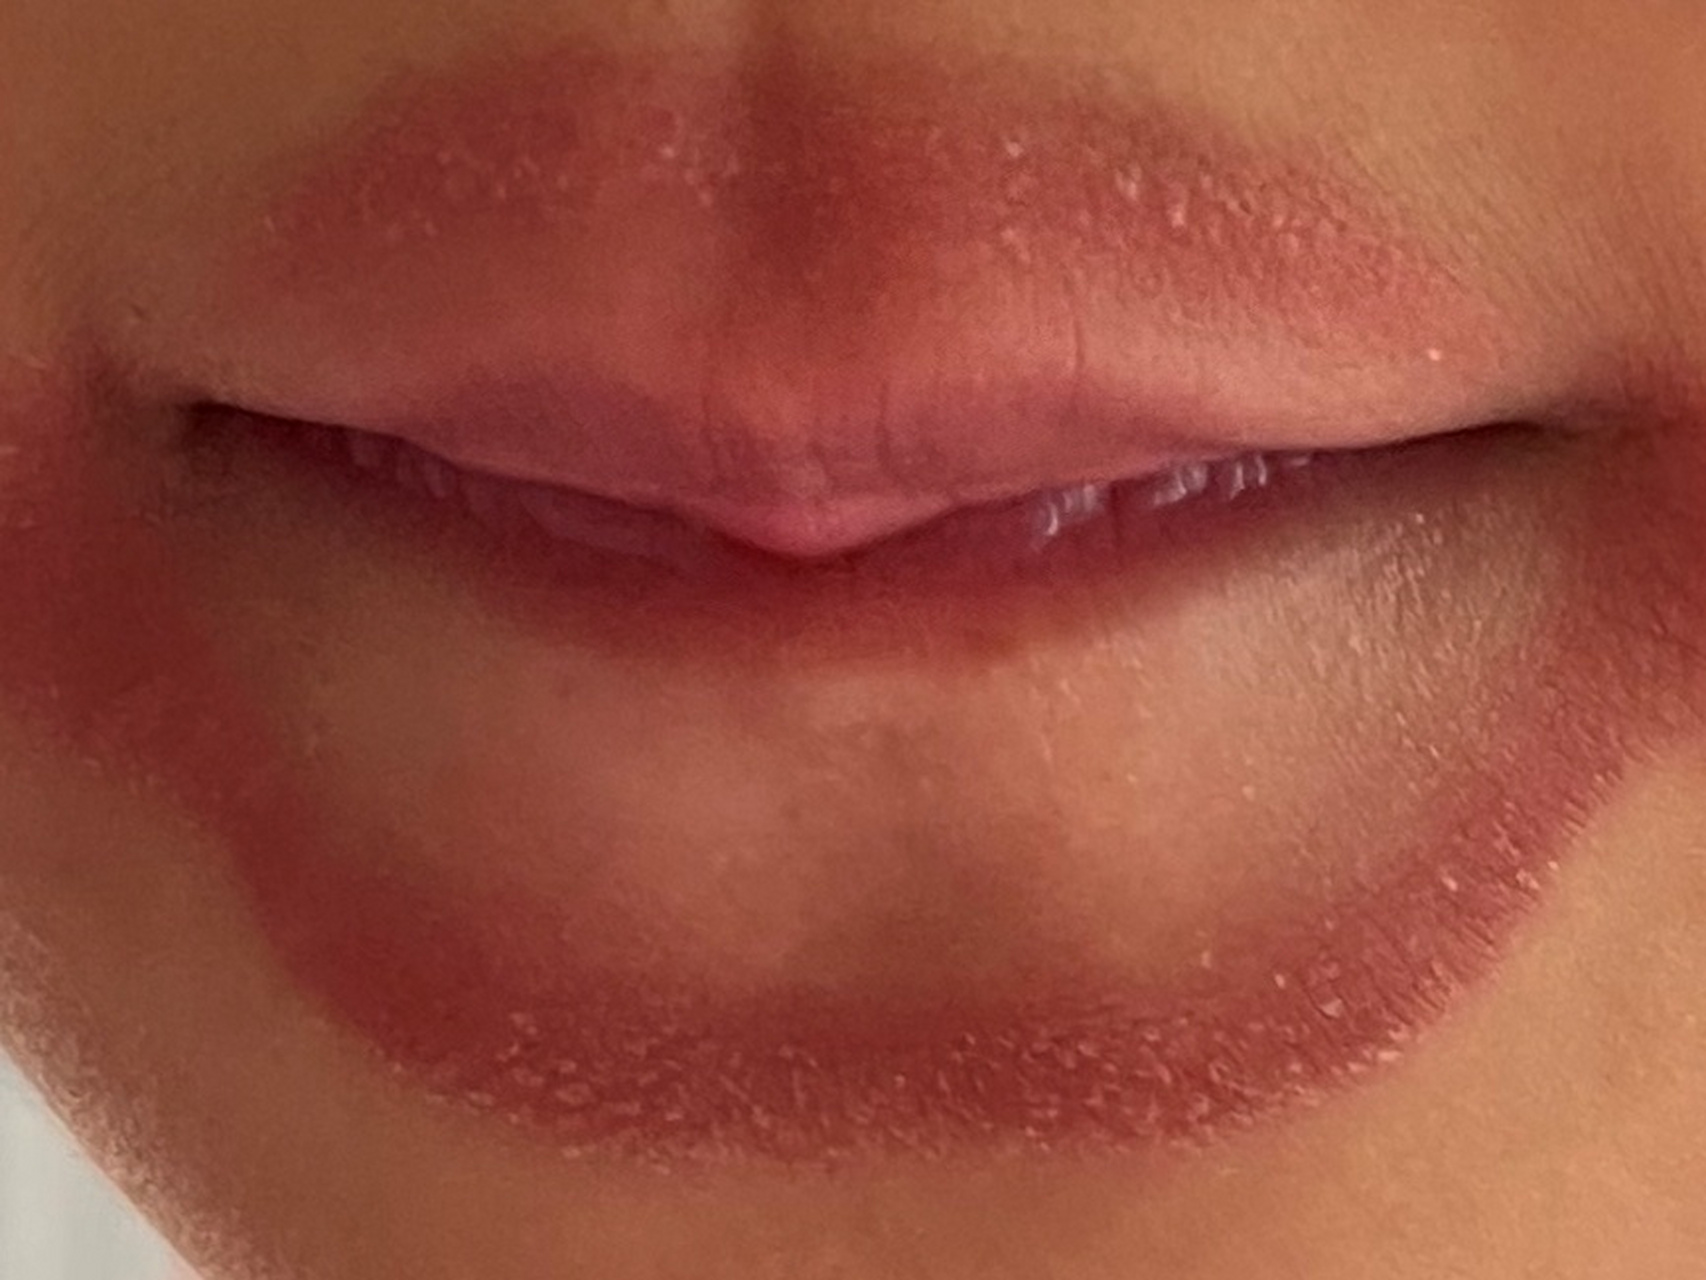 嘴唇发红是什么原因?图片